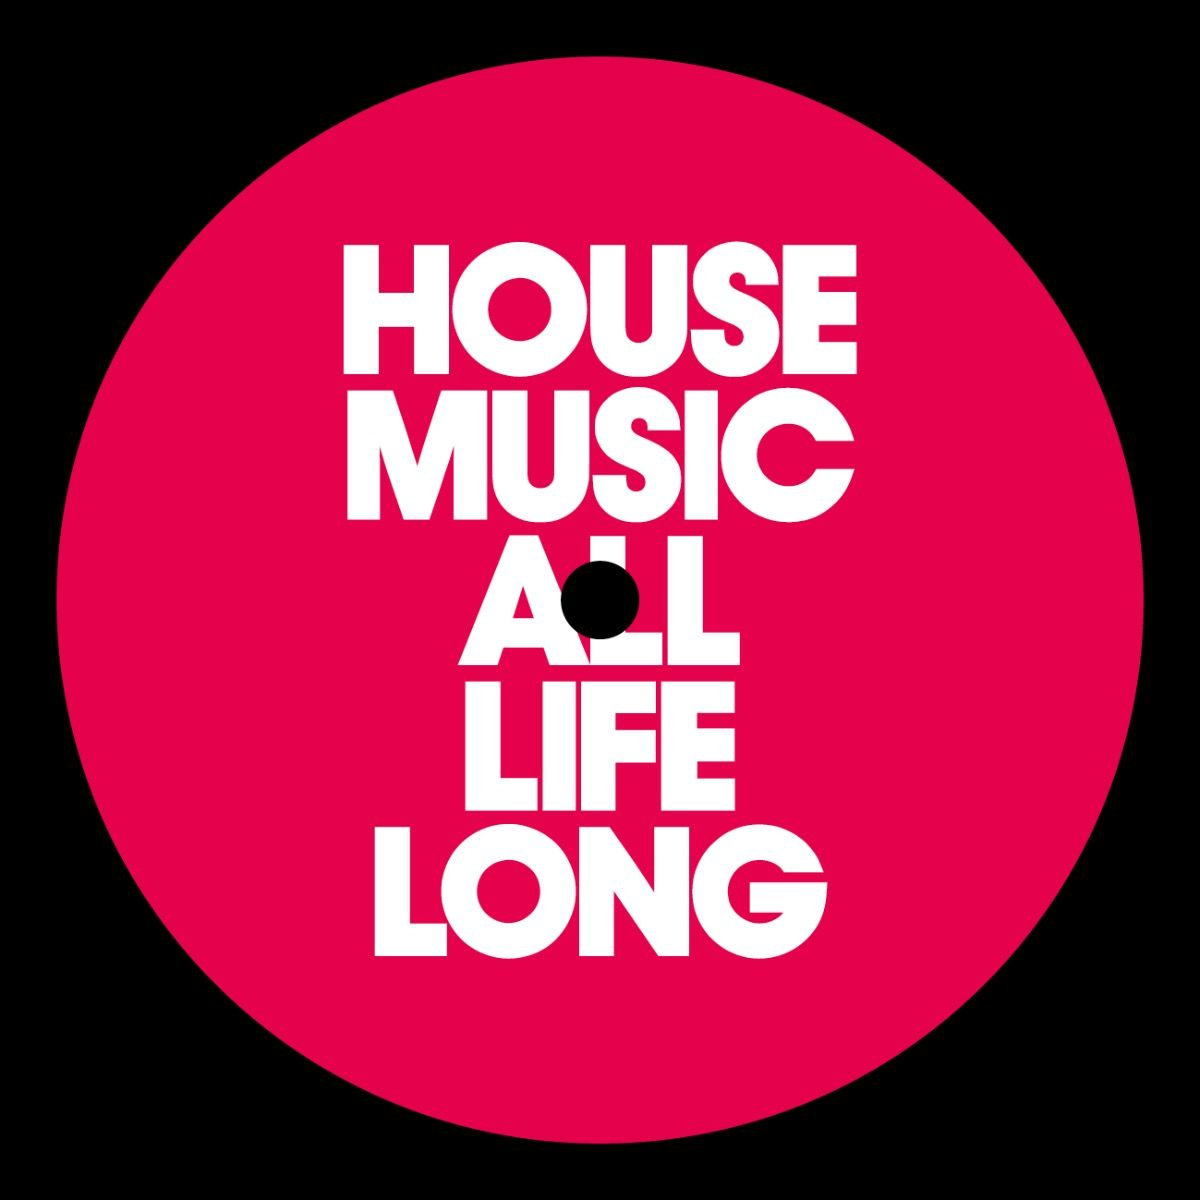 Музыка house music. House Music картинки. House Music all Life long. Наклейка House Music. Футболка House Music.